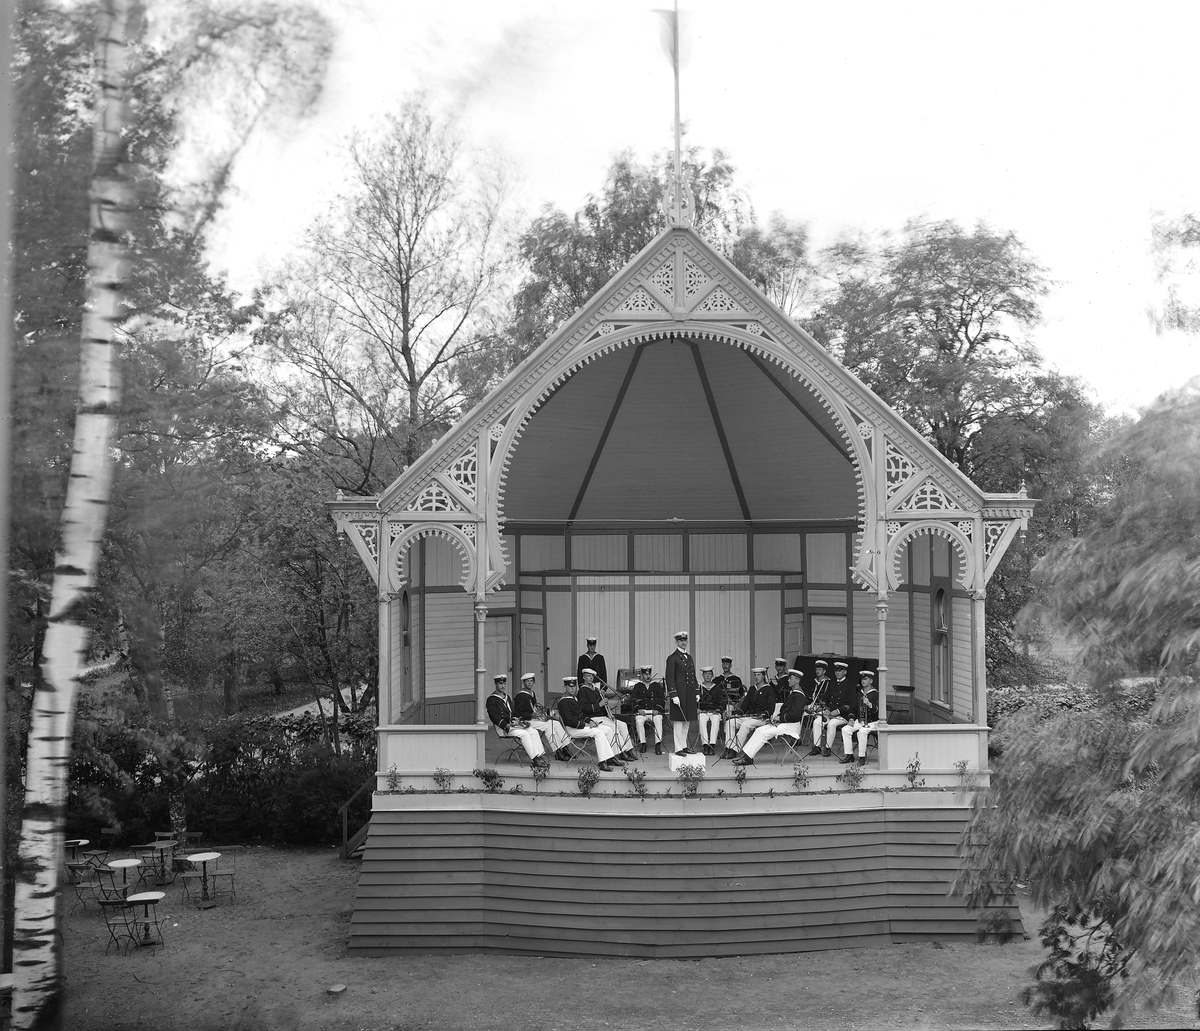 Scenen vid Trädgårdsföreningen i Linköping. Orkester spelar på scenen. 

...

Park. Musikunderhållning. Musik. Paviljong.